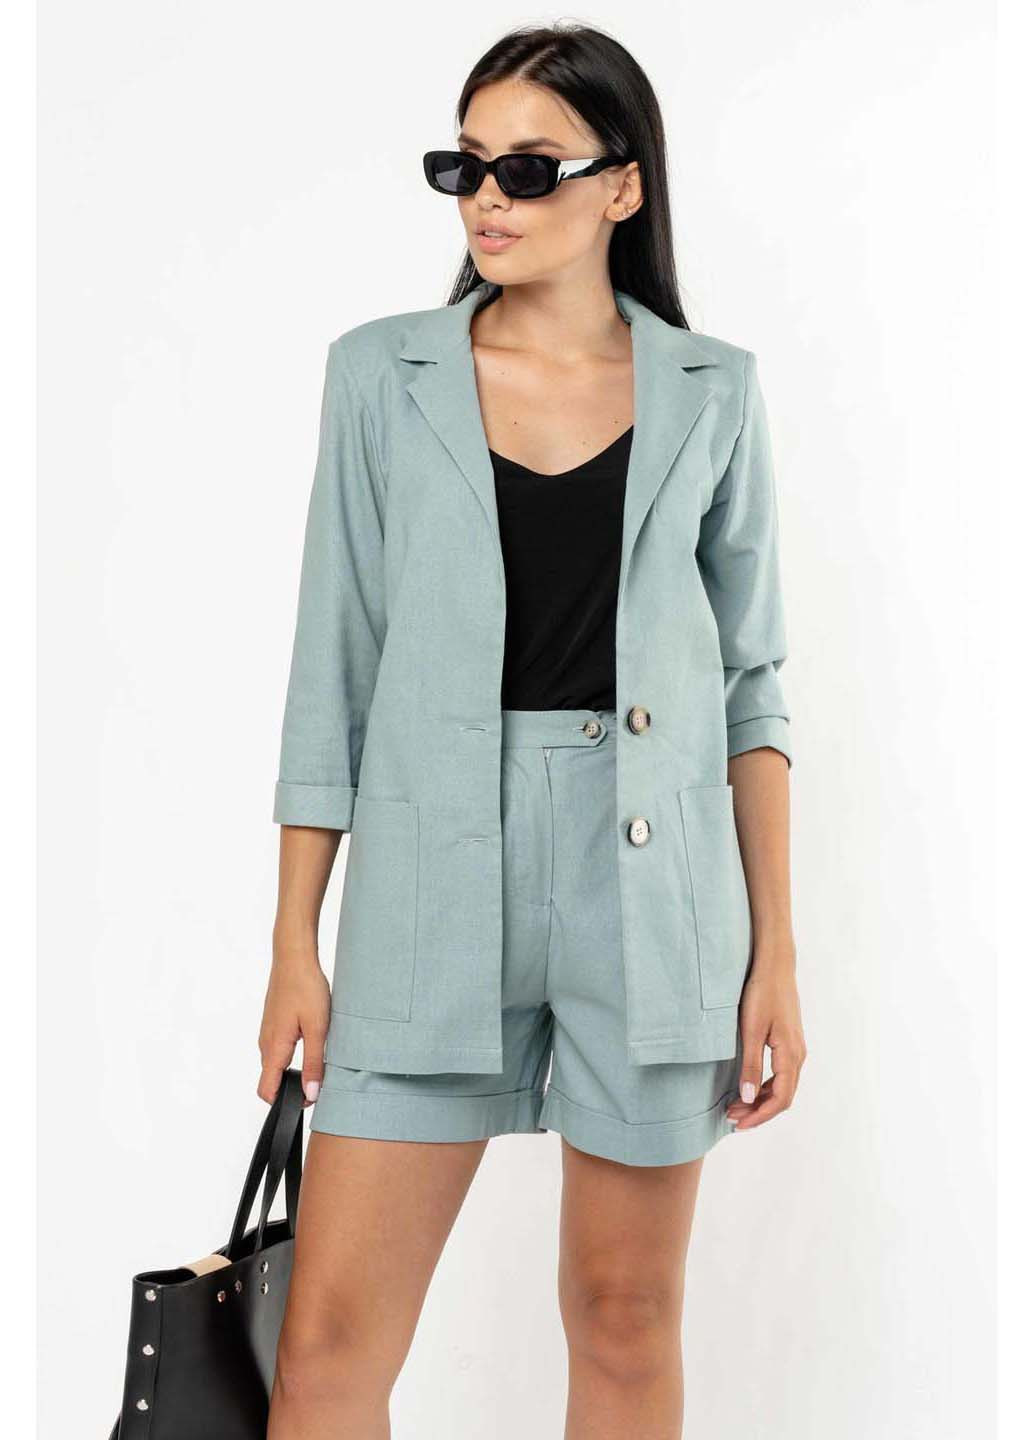 Цветной женский пиджак Ри Мари - демисезонный